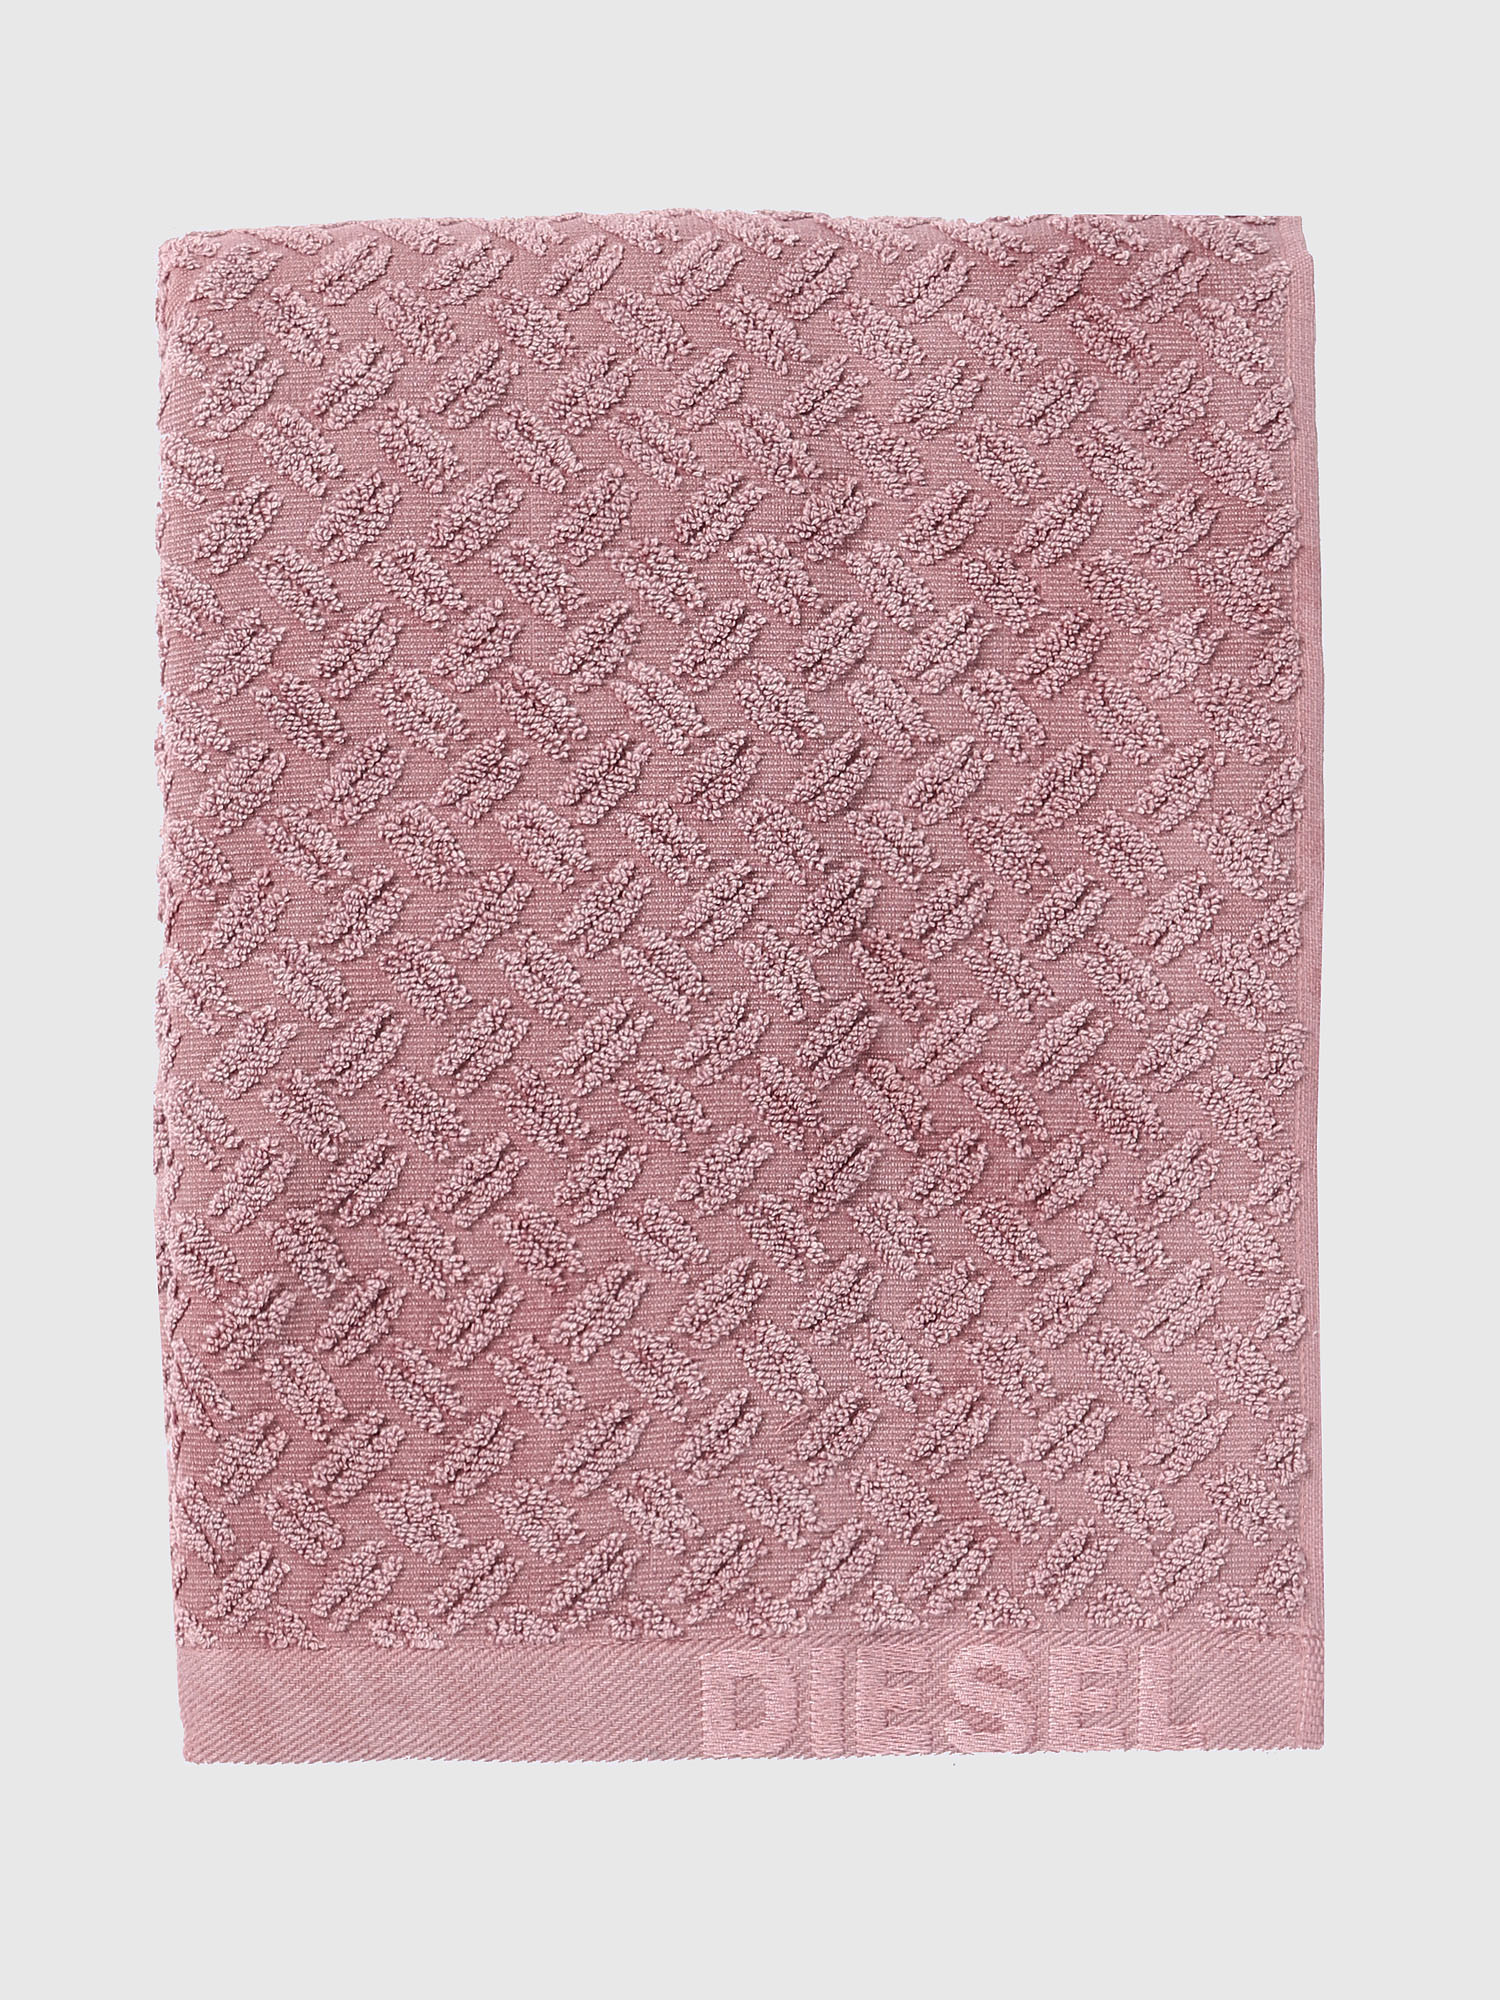 Diesel - 72301 STAGE, Pink - Image 1